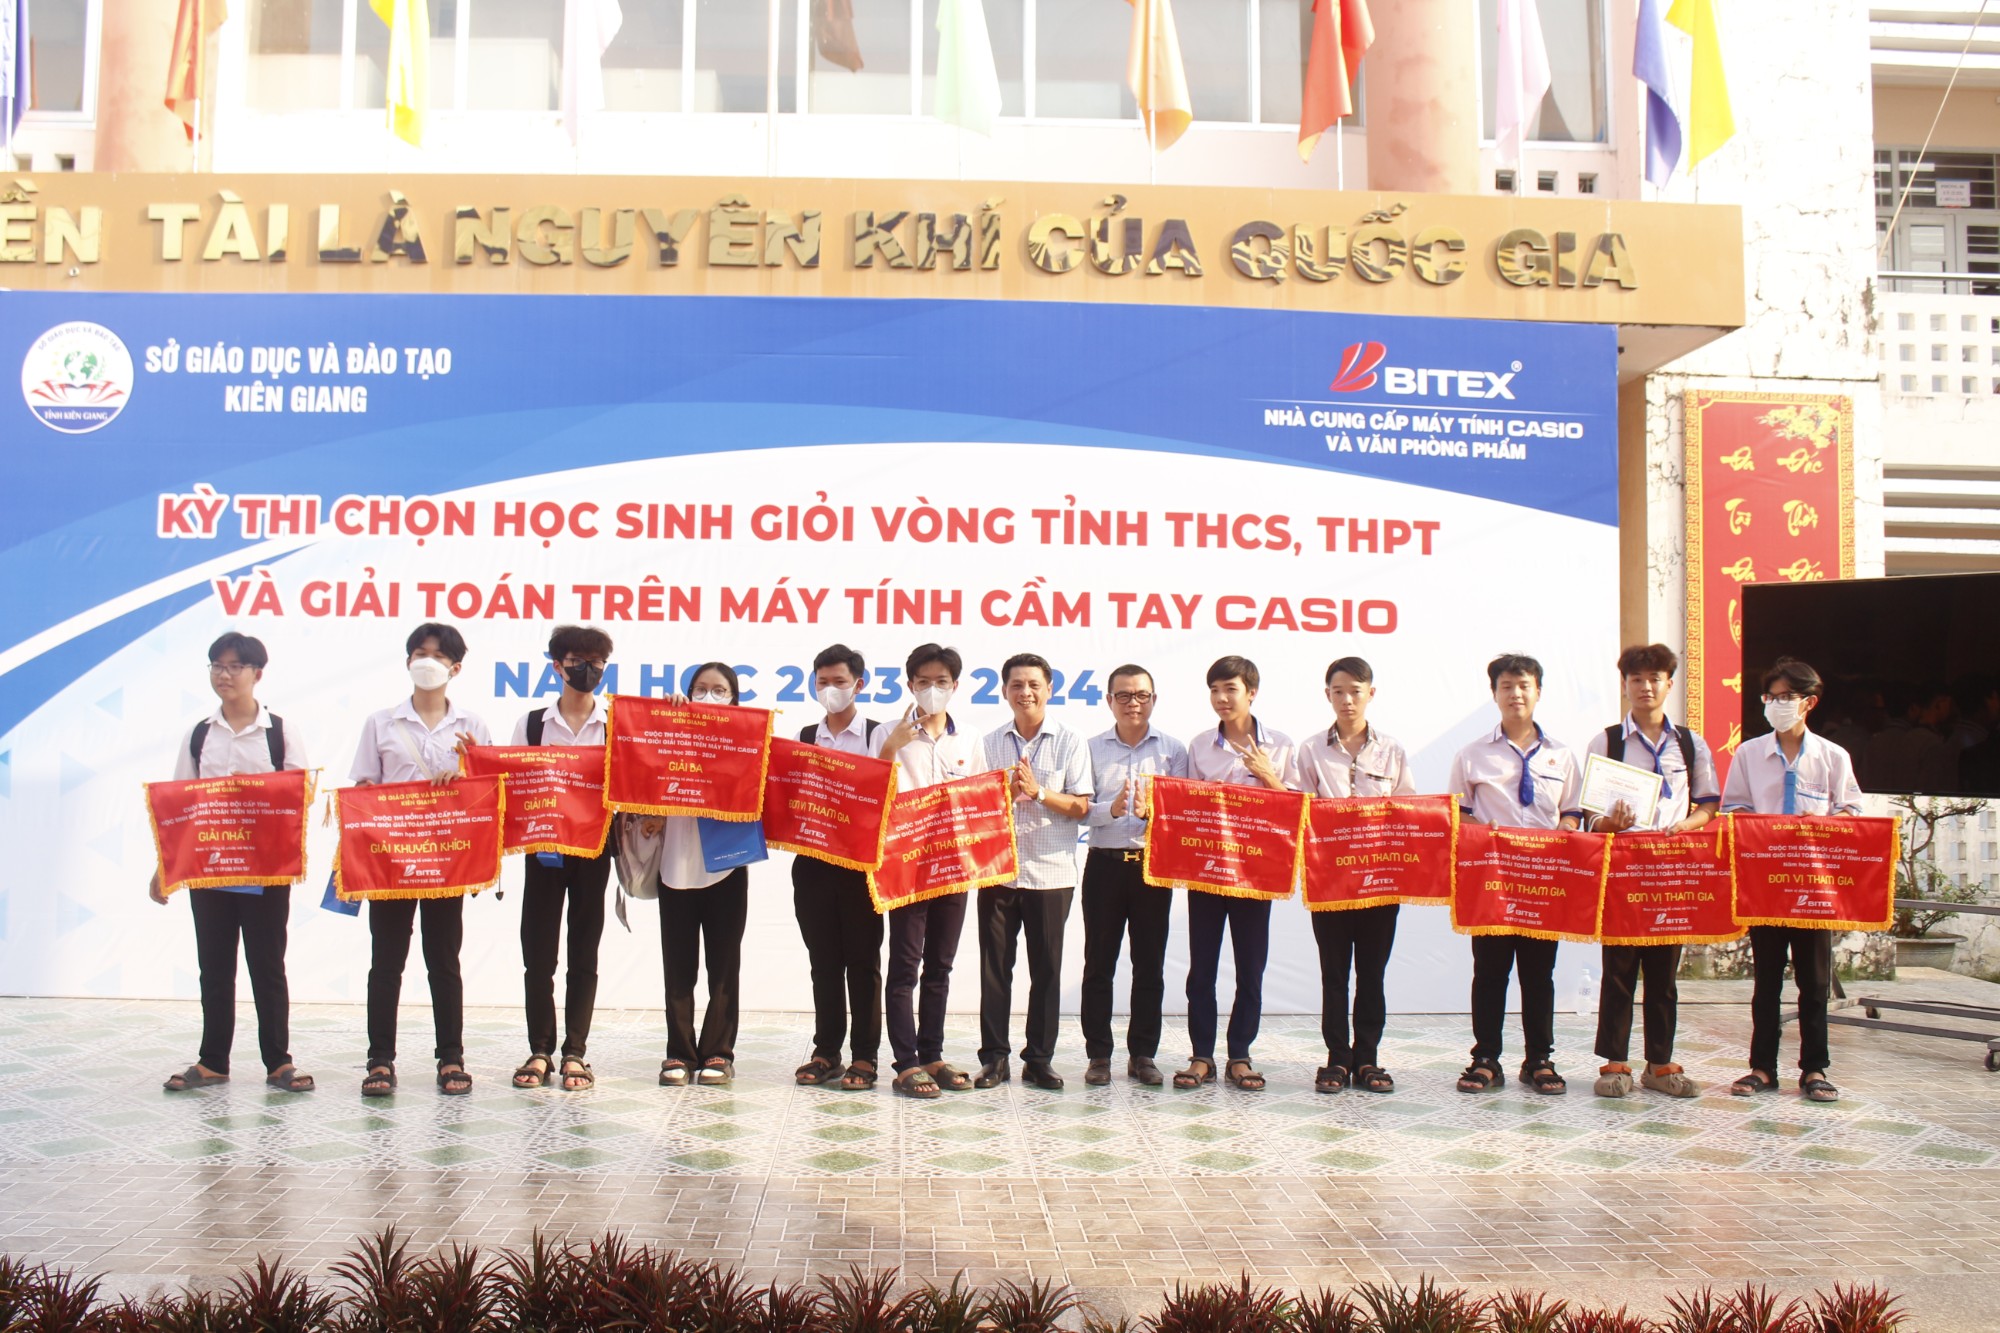 Ông Nguyễn Đắc Lực, Phó Tổng Giám đốc Công ty BITEX đại diện cờ cho các đại diện xuất sắc trong phần thi đồng đội